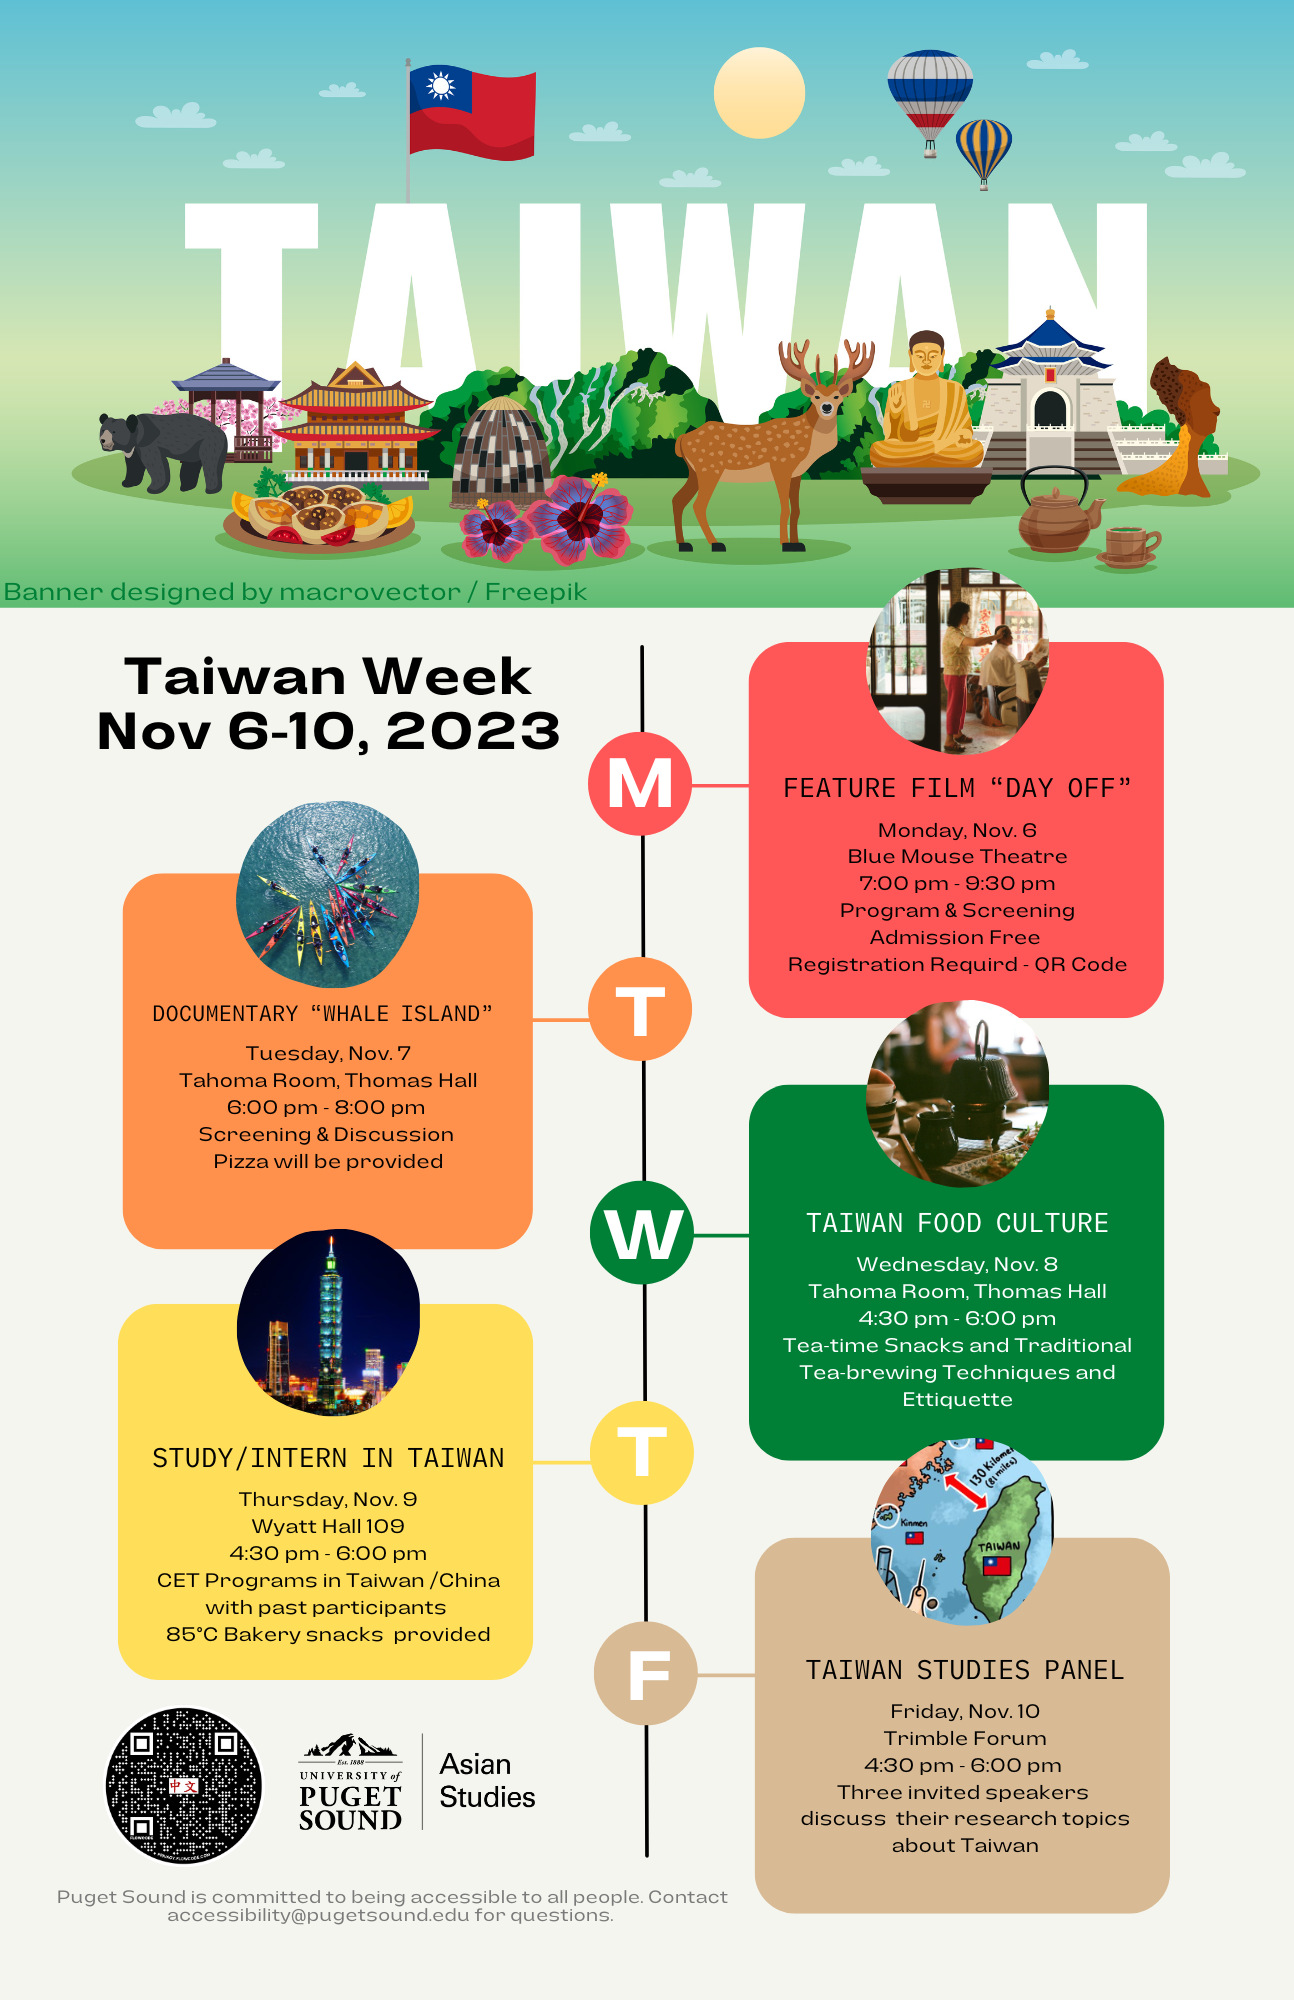 Taiwan Week events